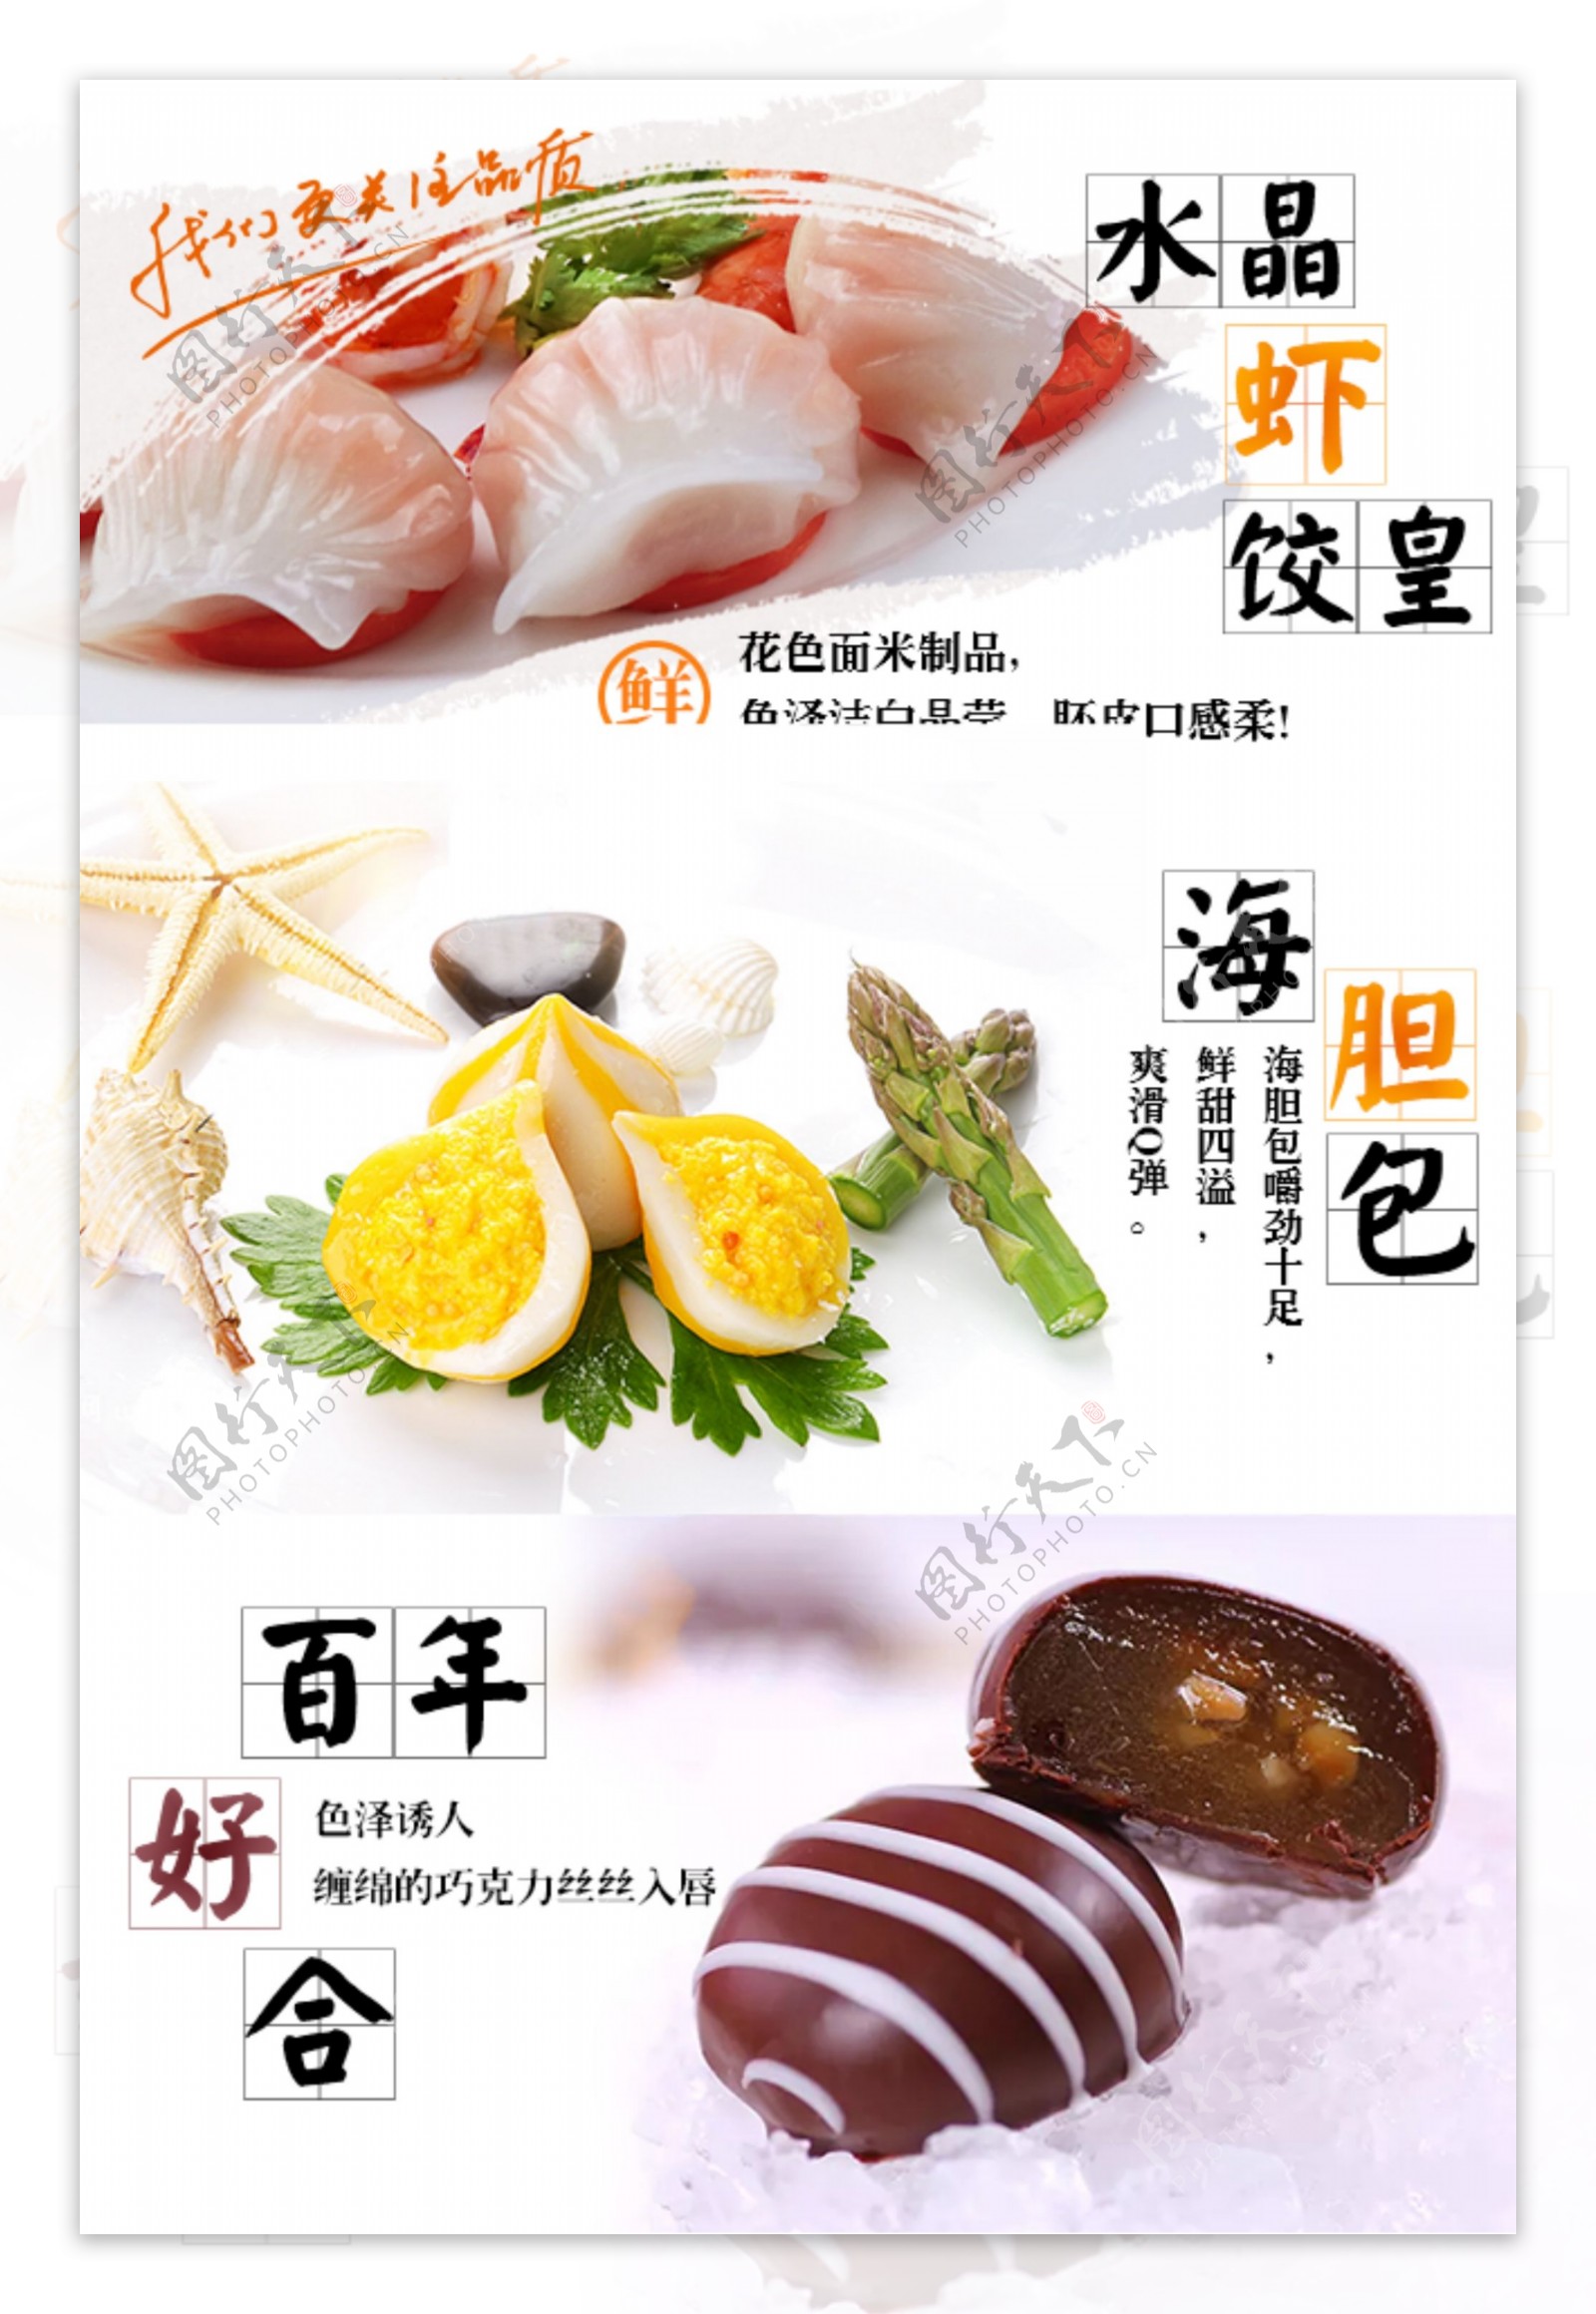 水晶虾饺皇海胆包